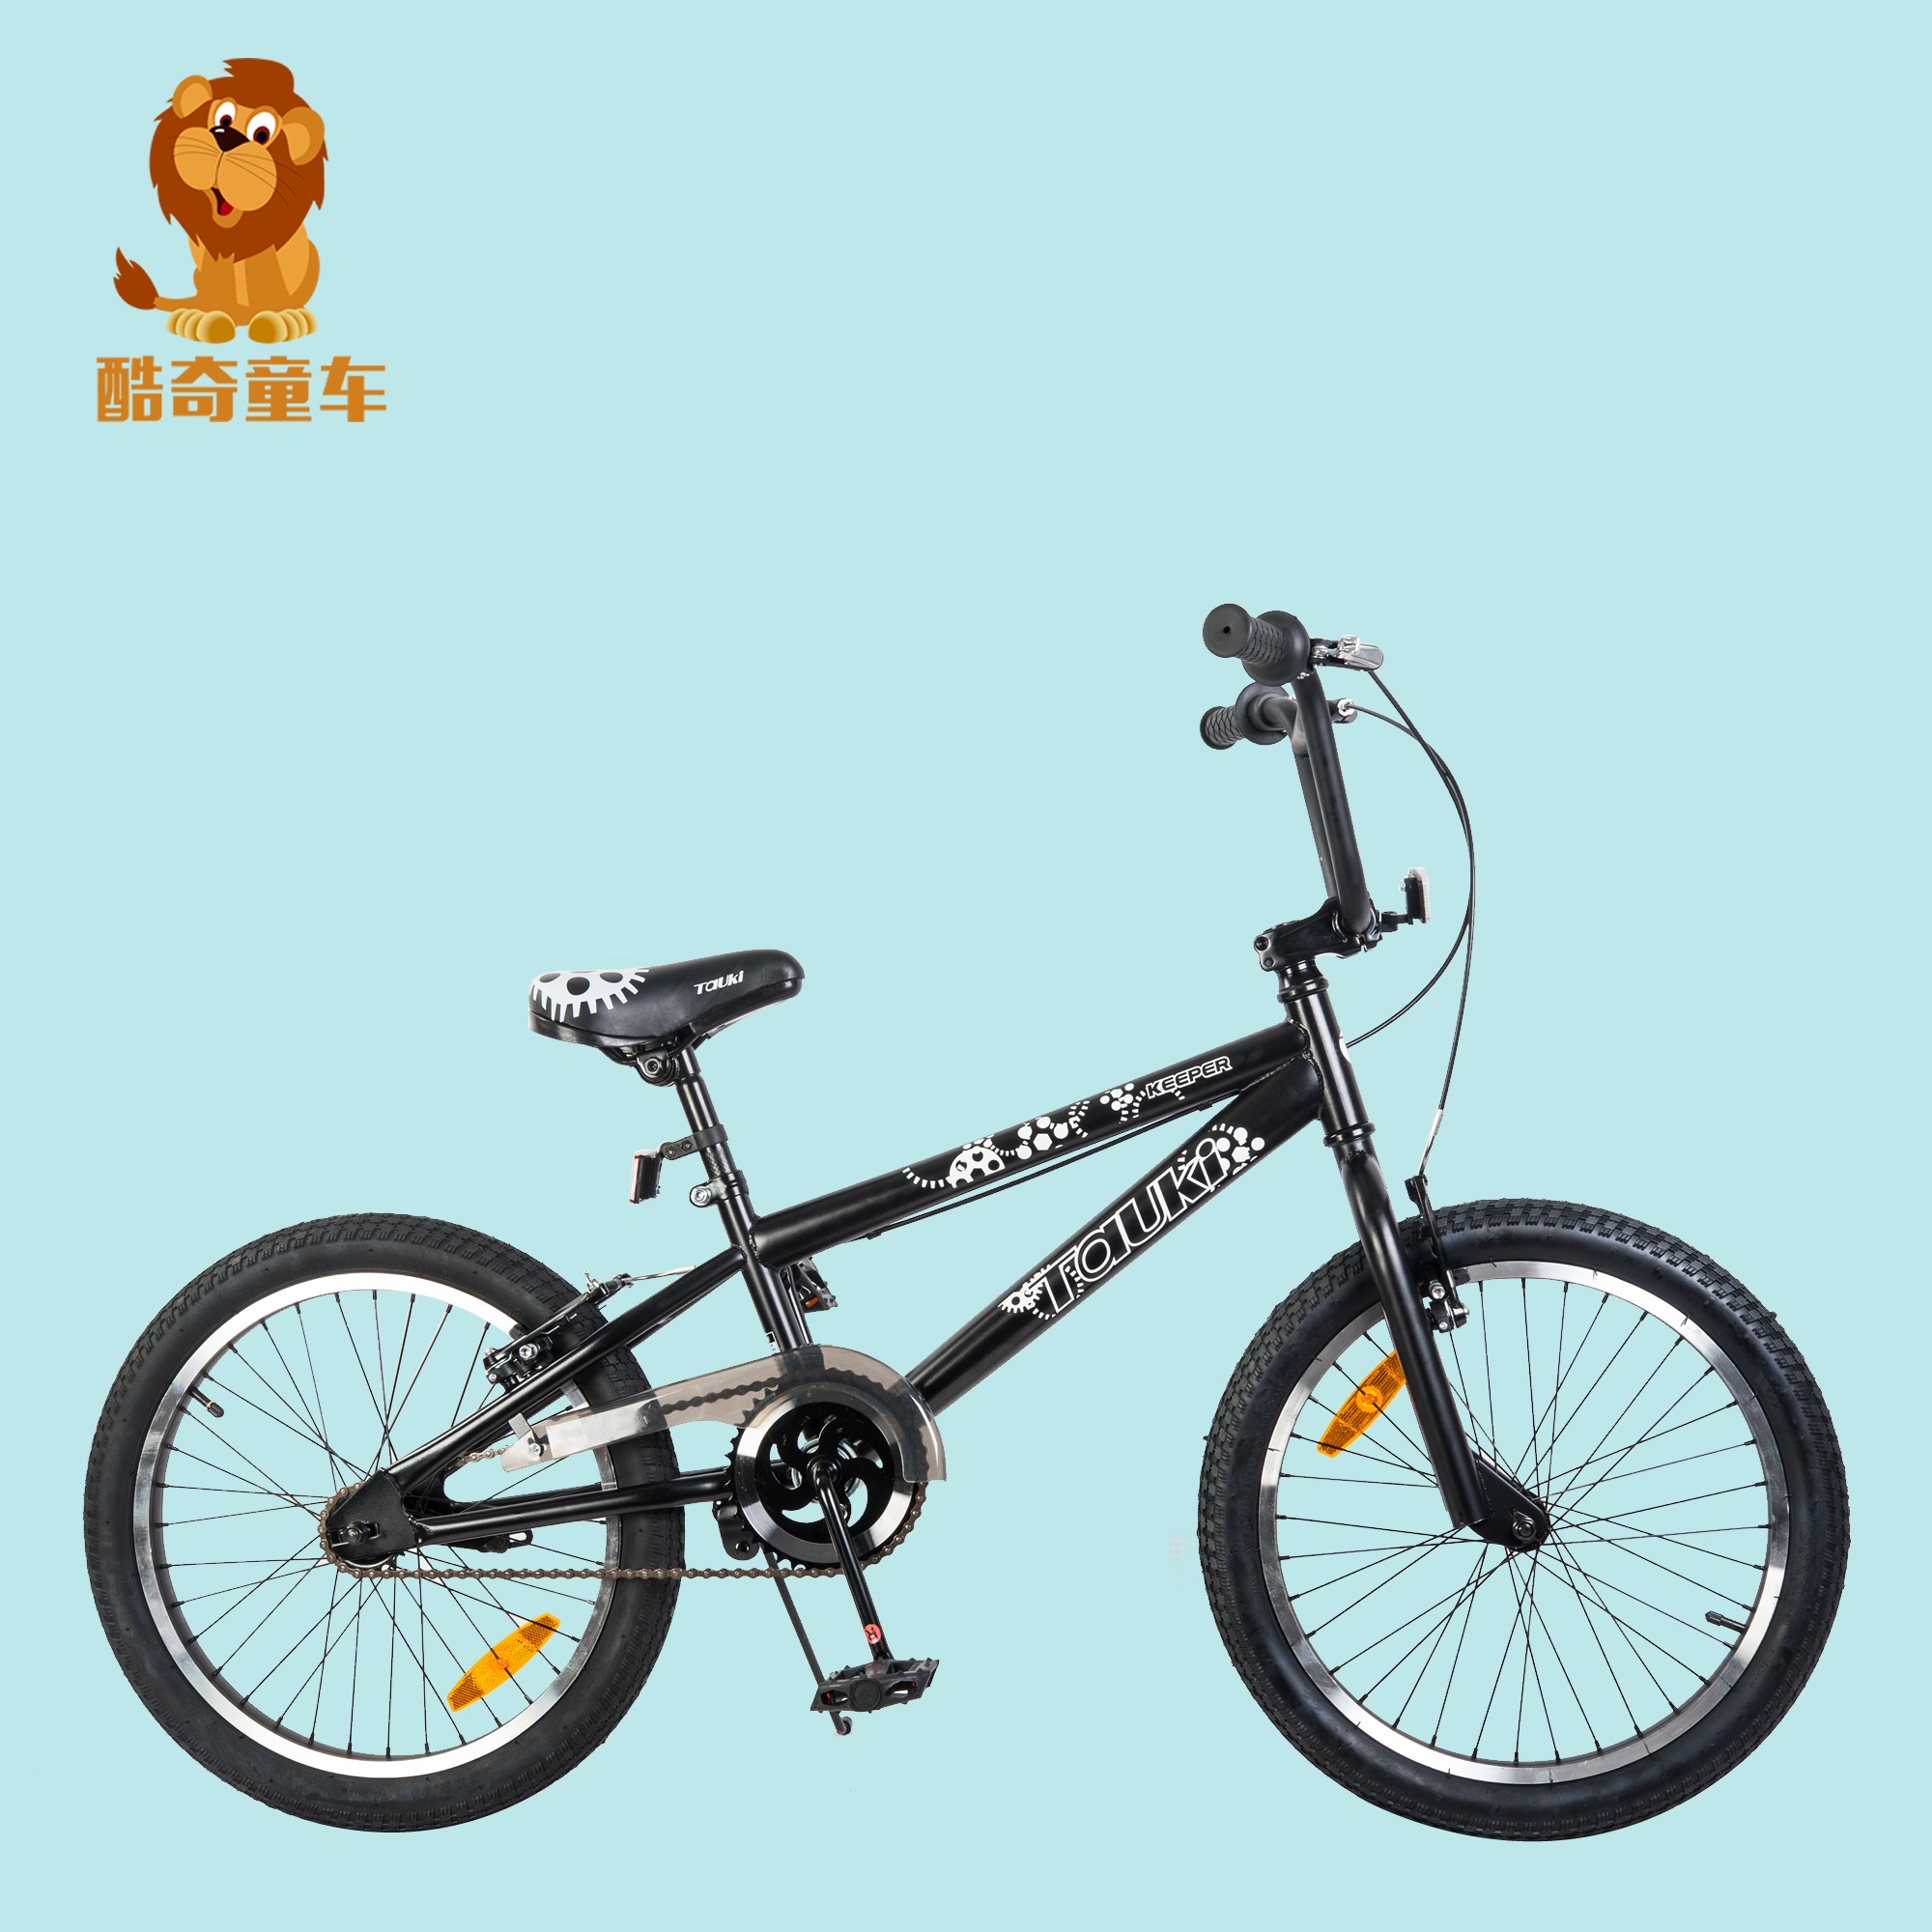 【酷奇童车】20寸自行车新款BMX表演运动山地健身儿童自行车礼品